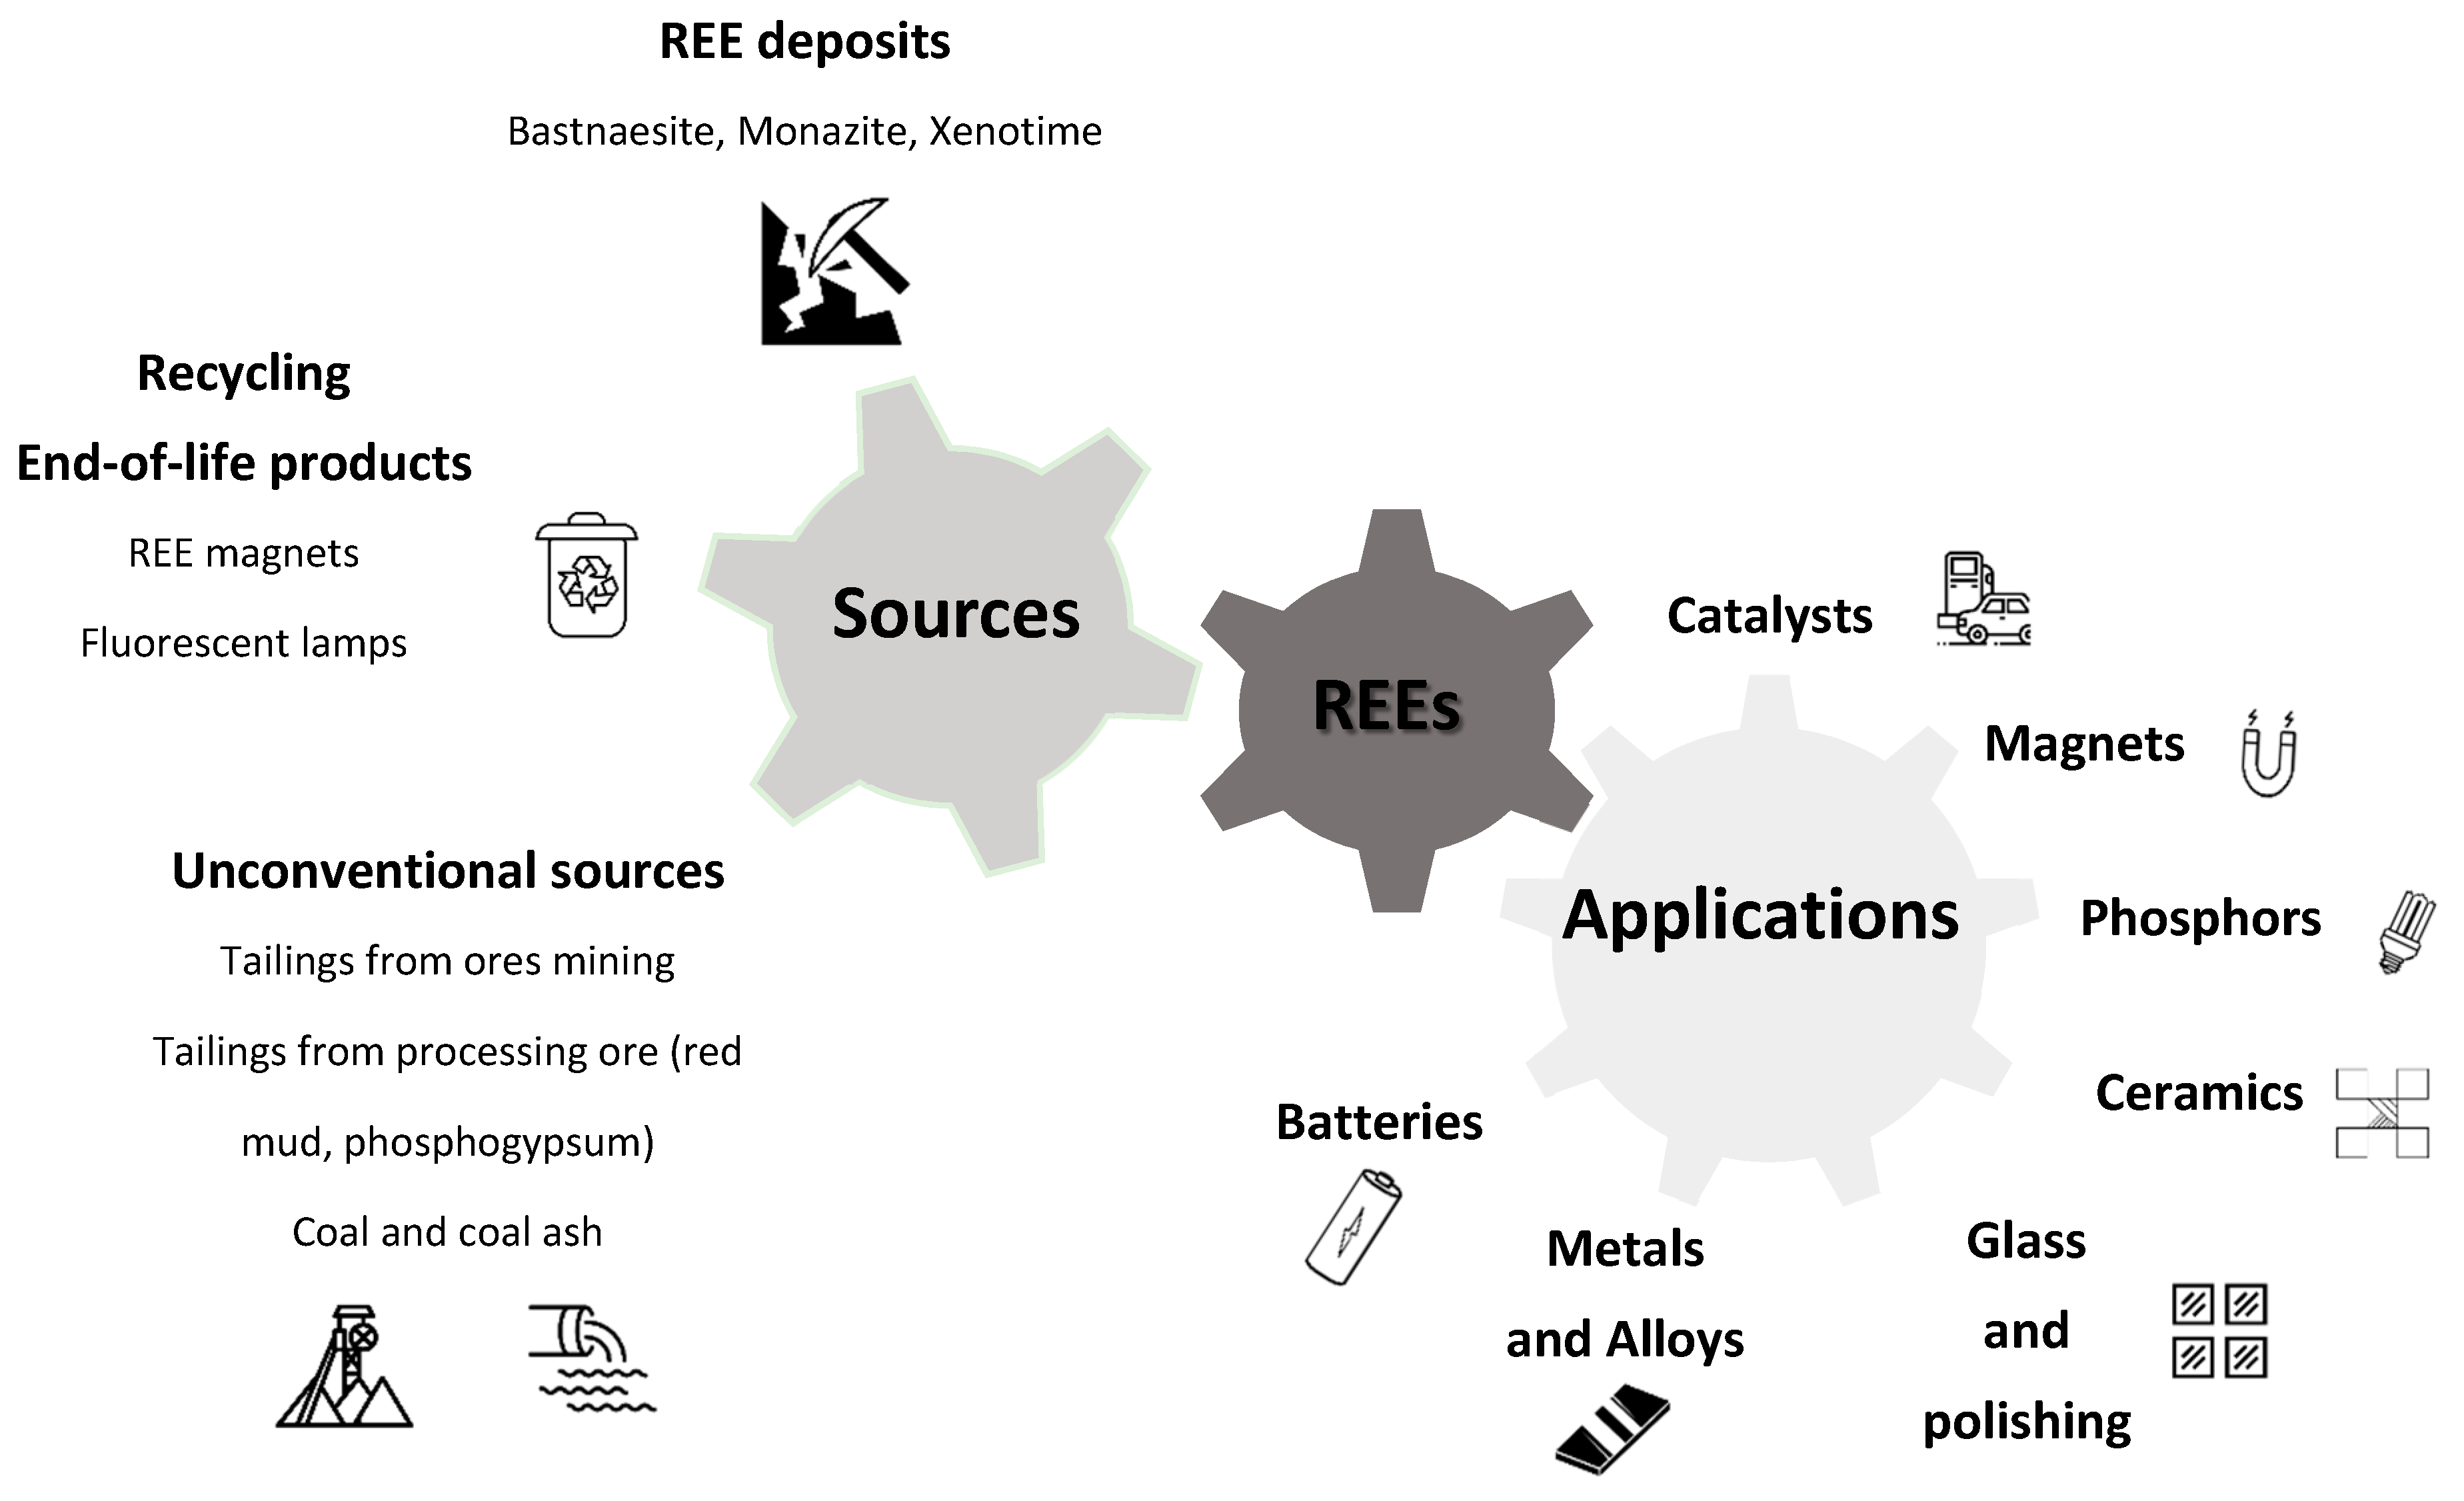 Les aimants permanents recyclés constituent une source de terres rares, REE4EU Project, Results in brief, H2020, CORDIS